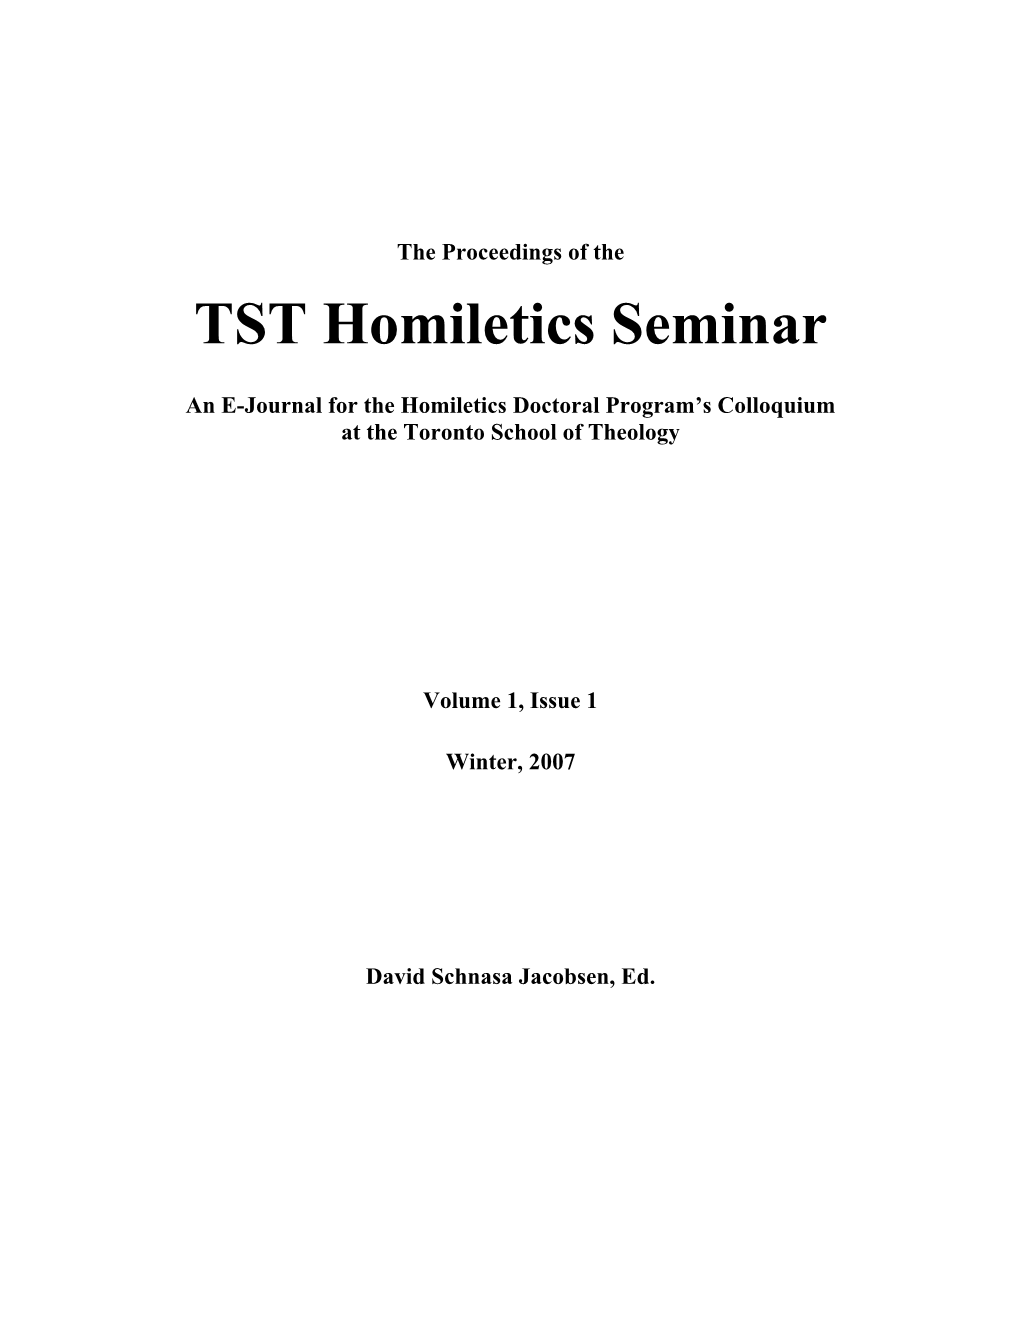 TST Homiletics Seminar